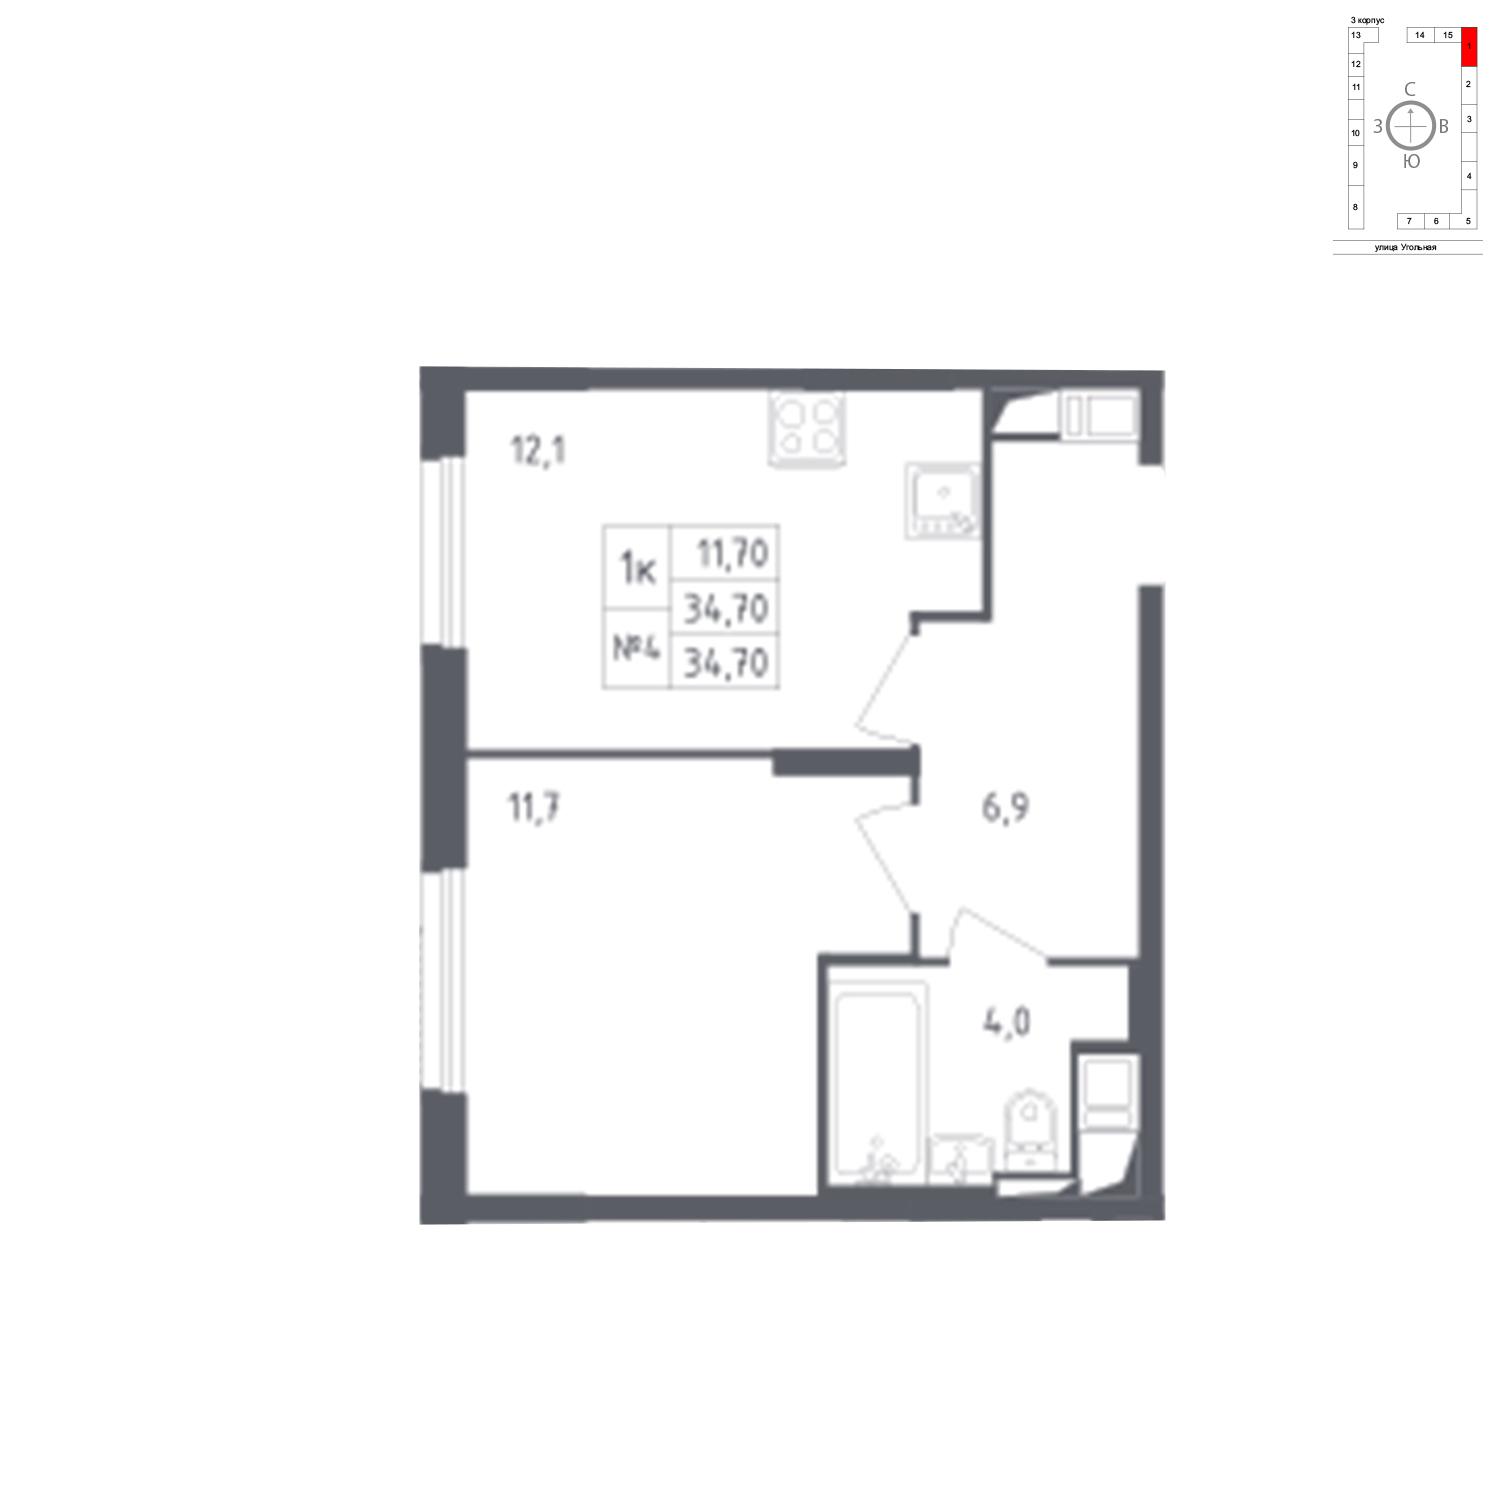 Продаётся 1-комнатная квартира в новостройке 34.7 кв.м. этаж 12/17 за 6 593 882 руб 